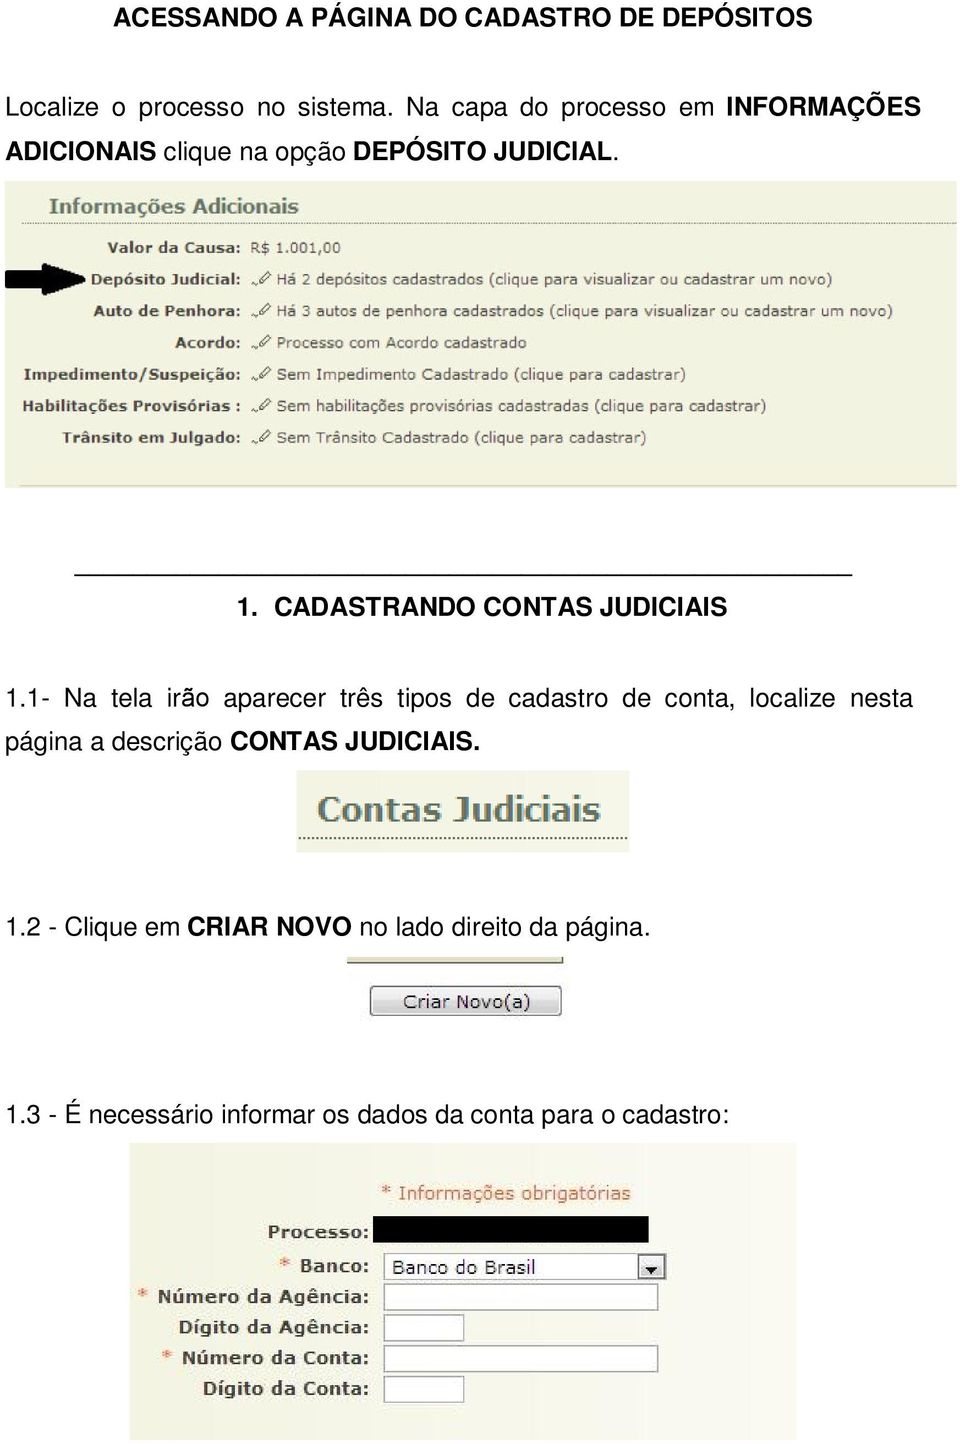 CADASTRANDO CONTAS JUDICIAIS 1.